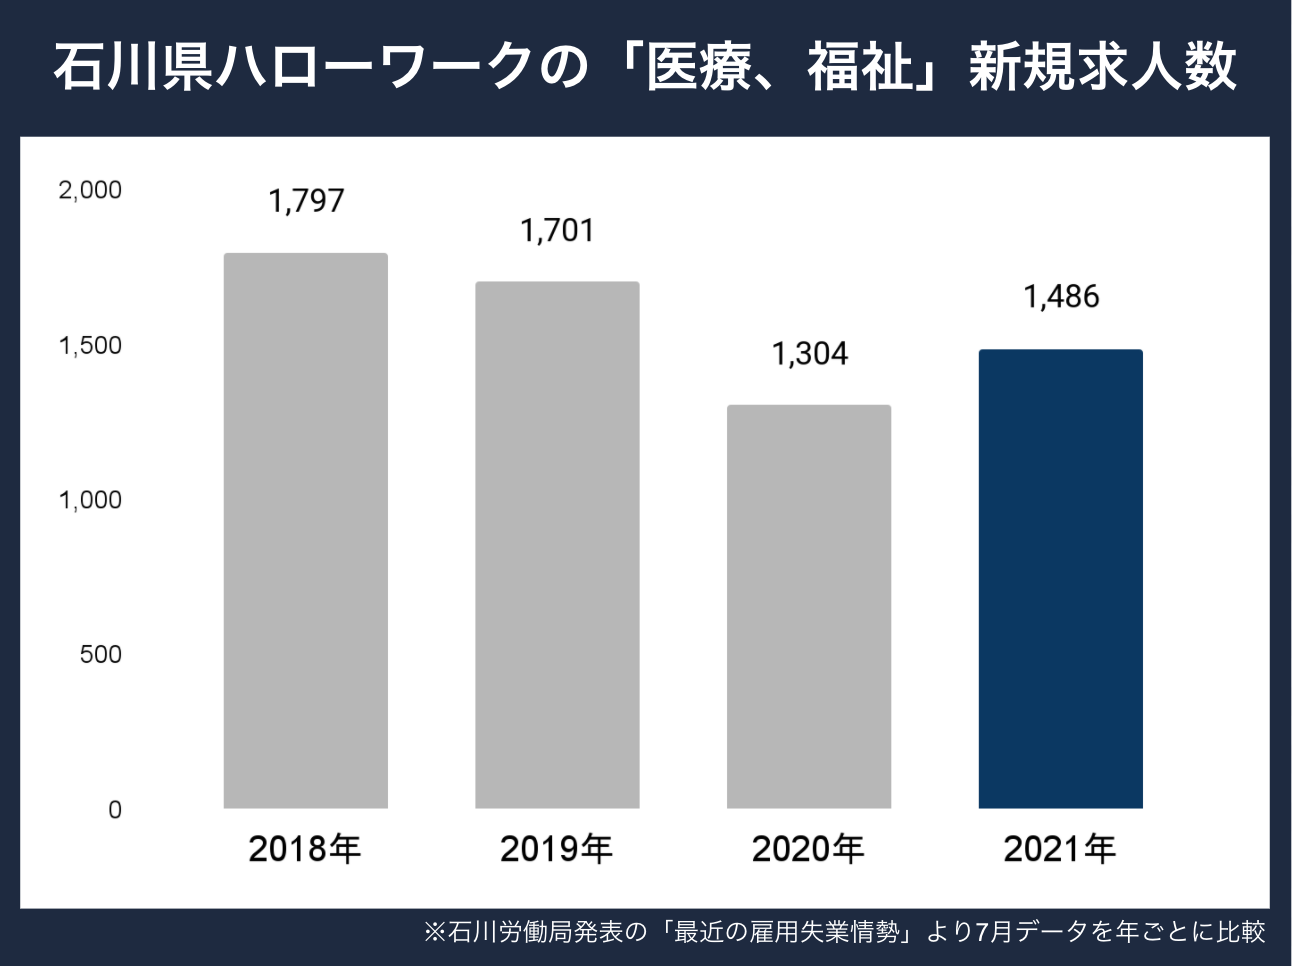 石川県新規求人数